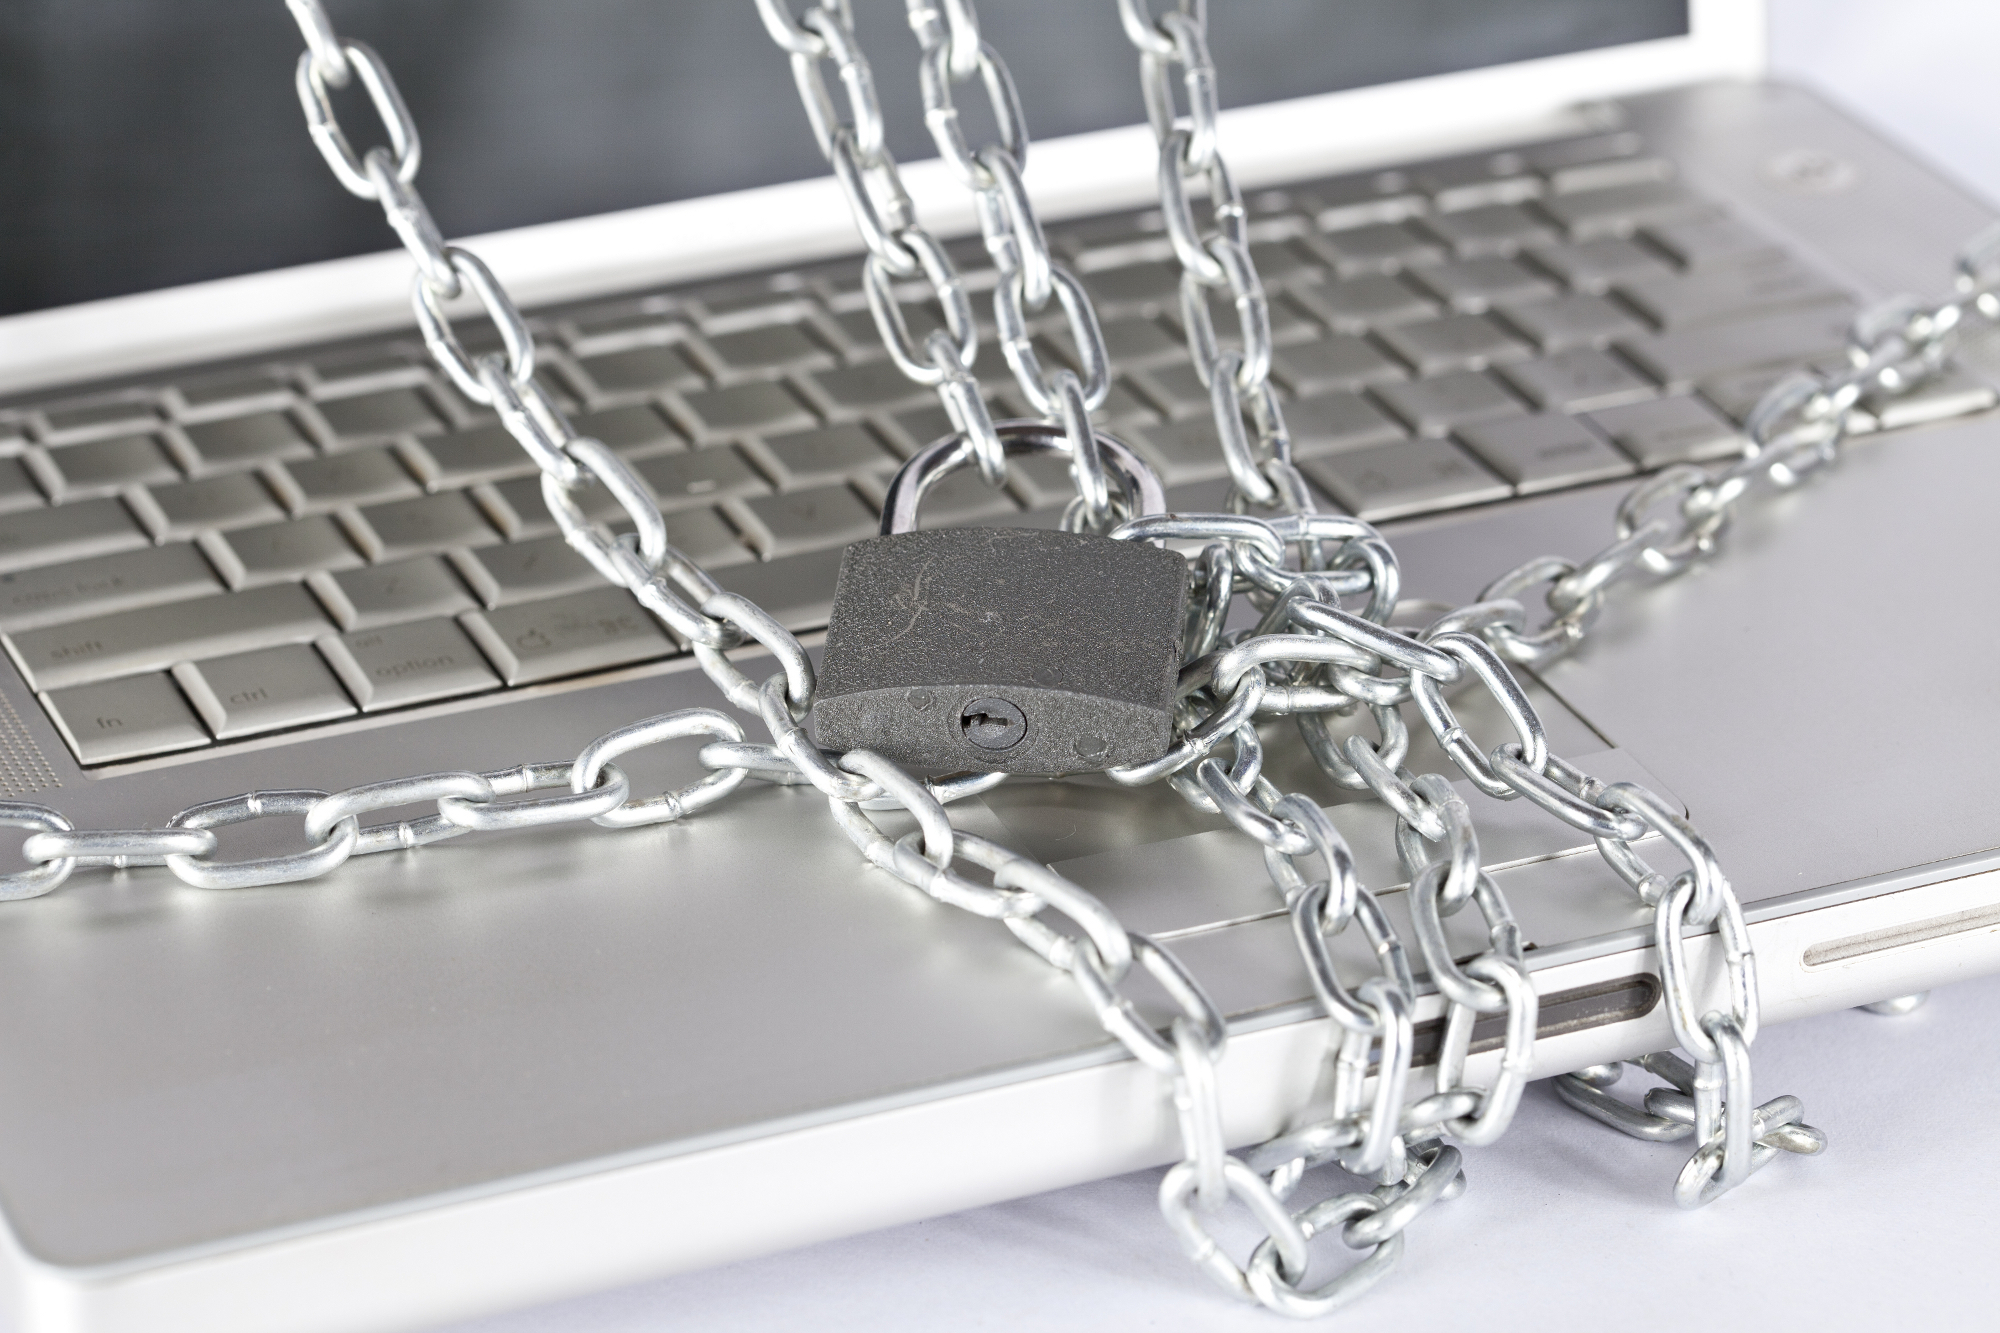 Check Point aggiorna la sicurezza delle PMI contro attacchi informatici più avanzati